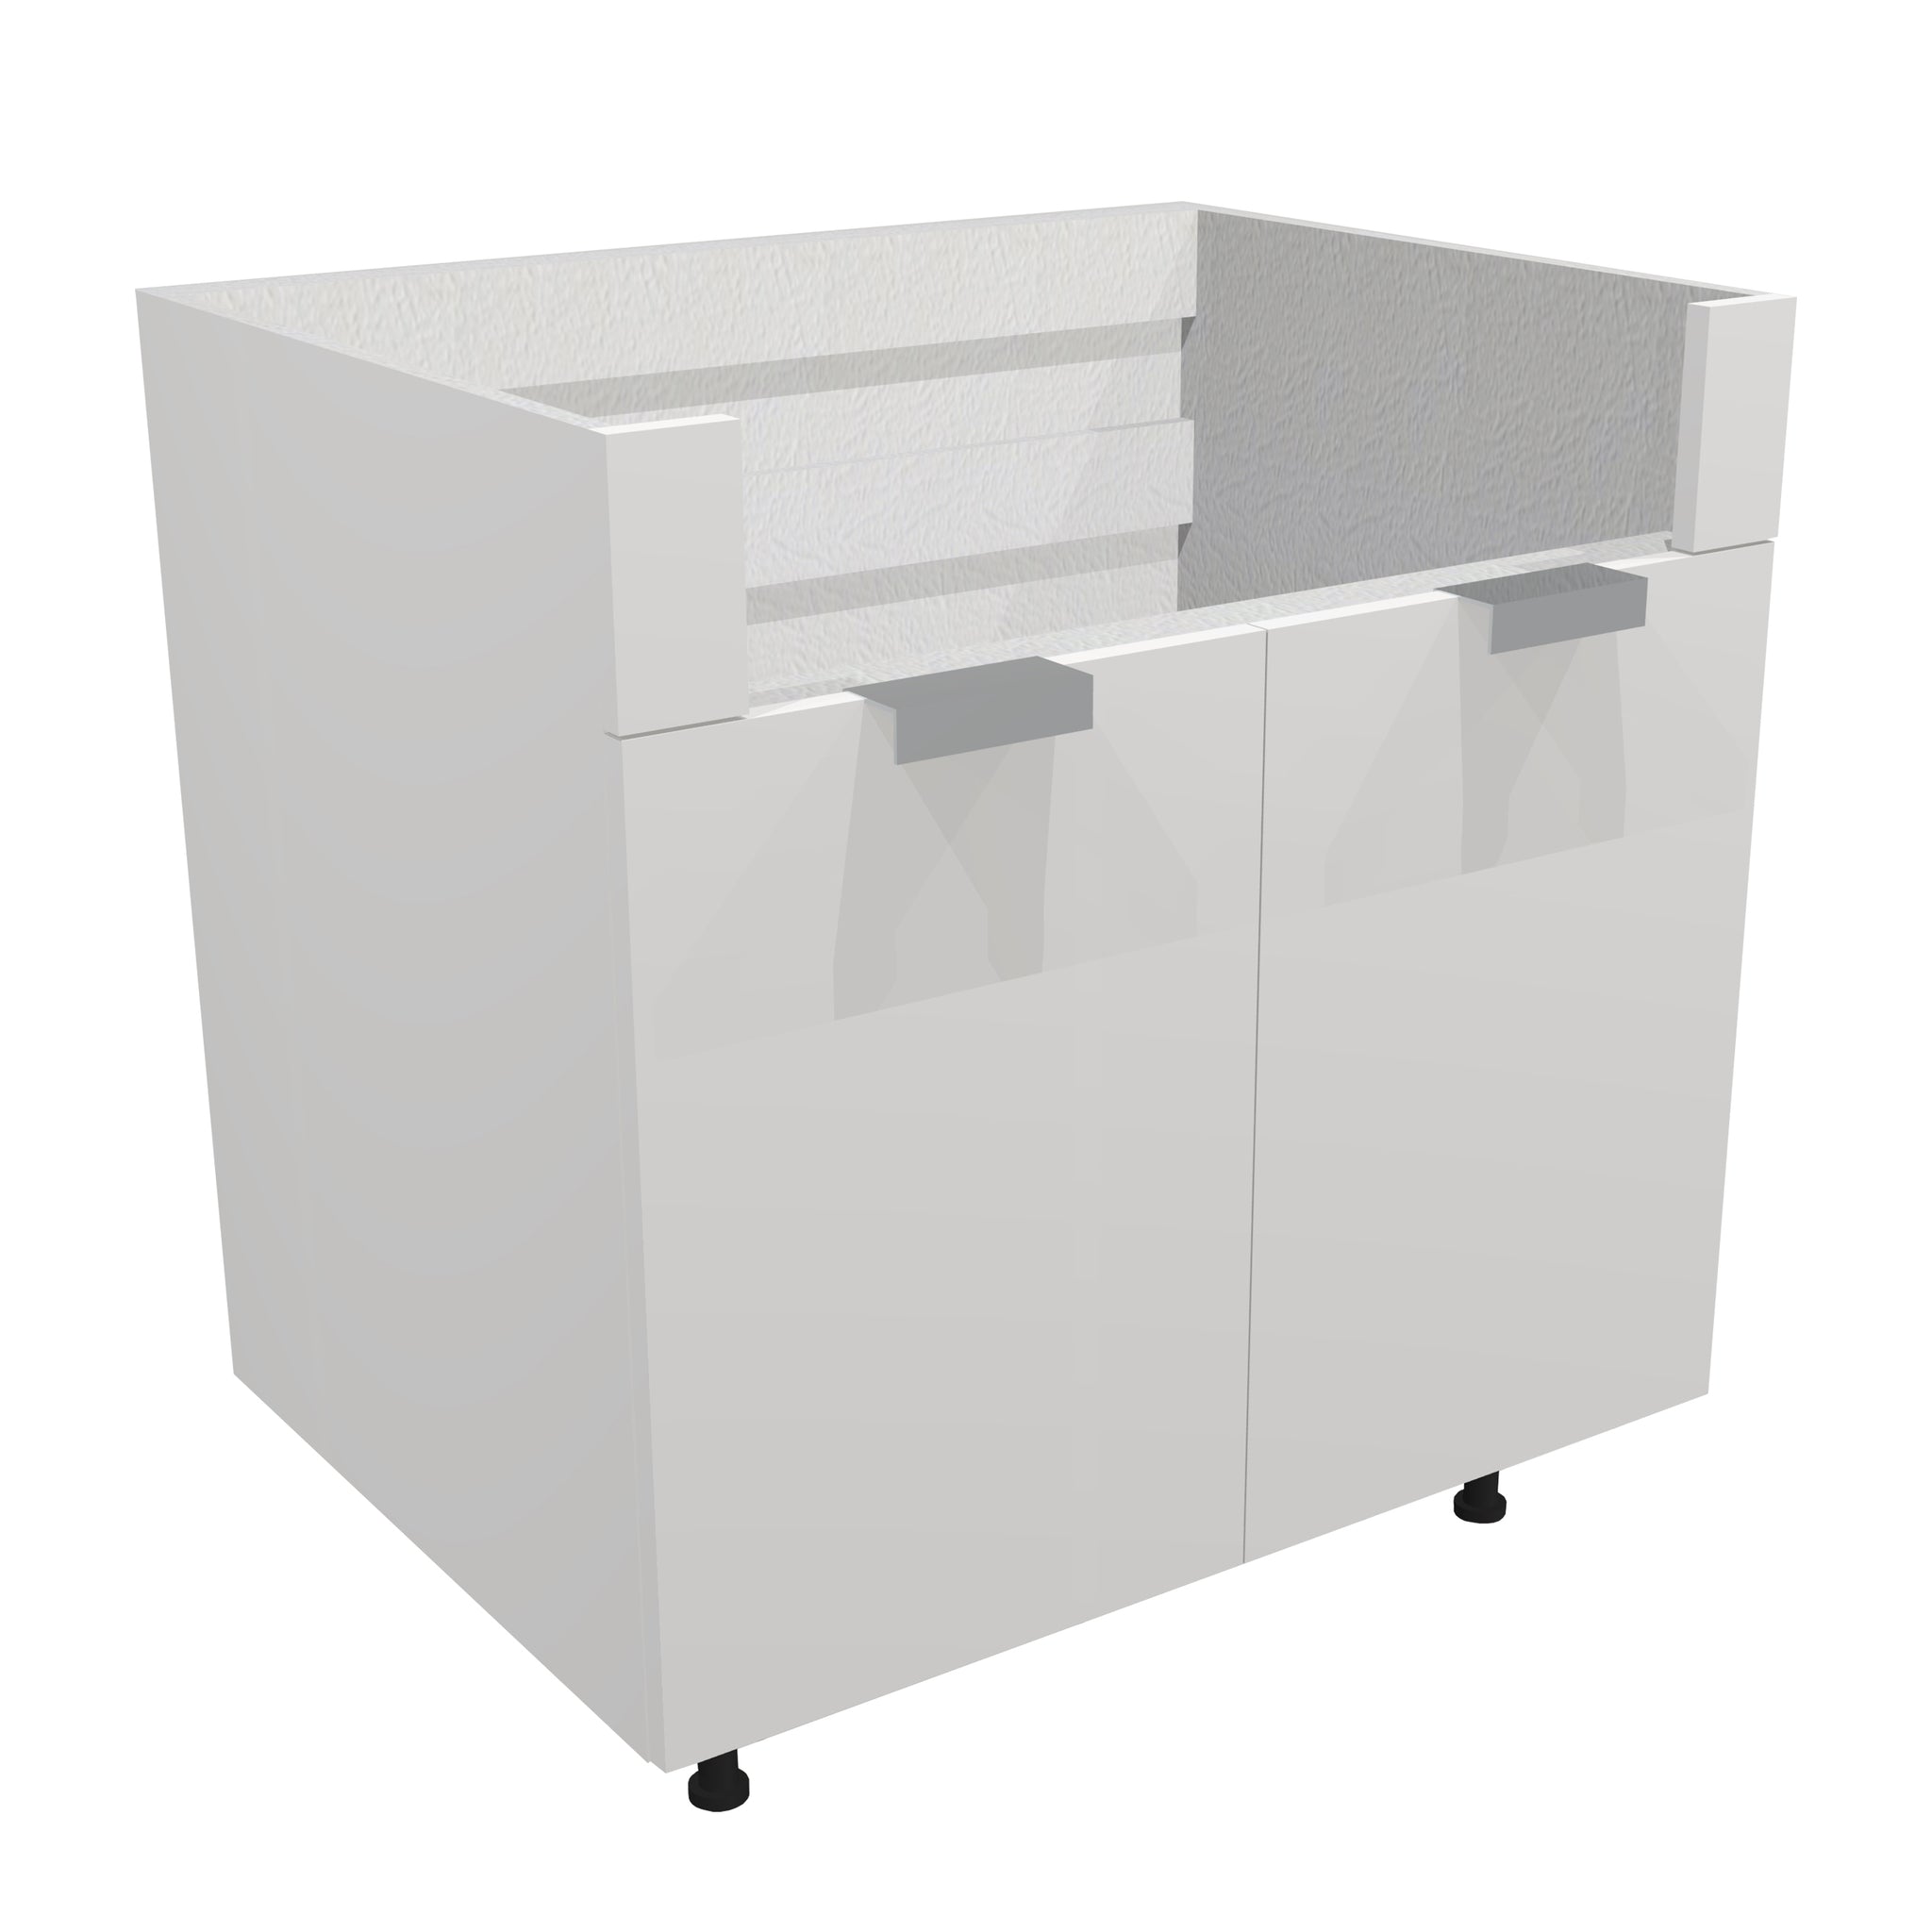 RTA - Glossy White - Farm Sink Base Cabinet | 36"W x 34.5"H x 24"D